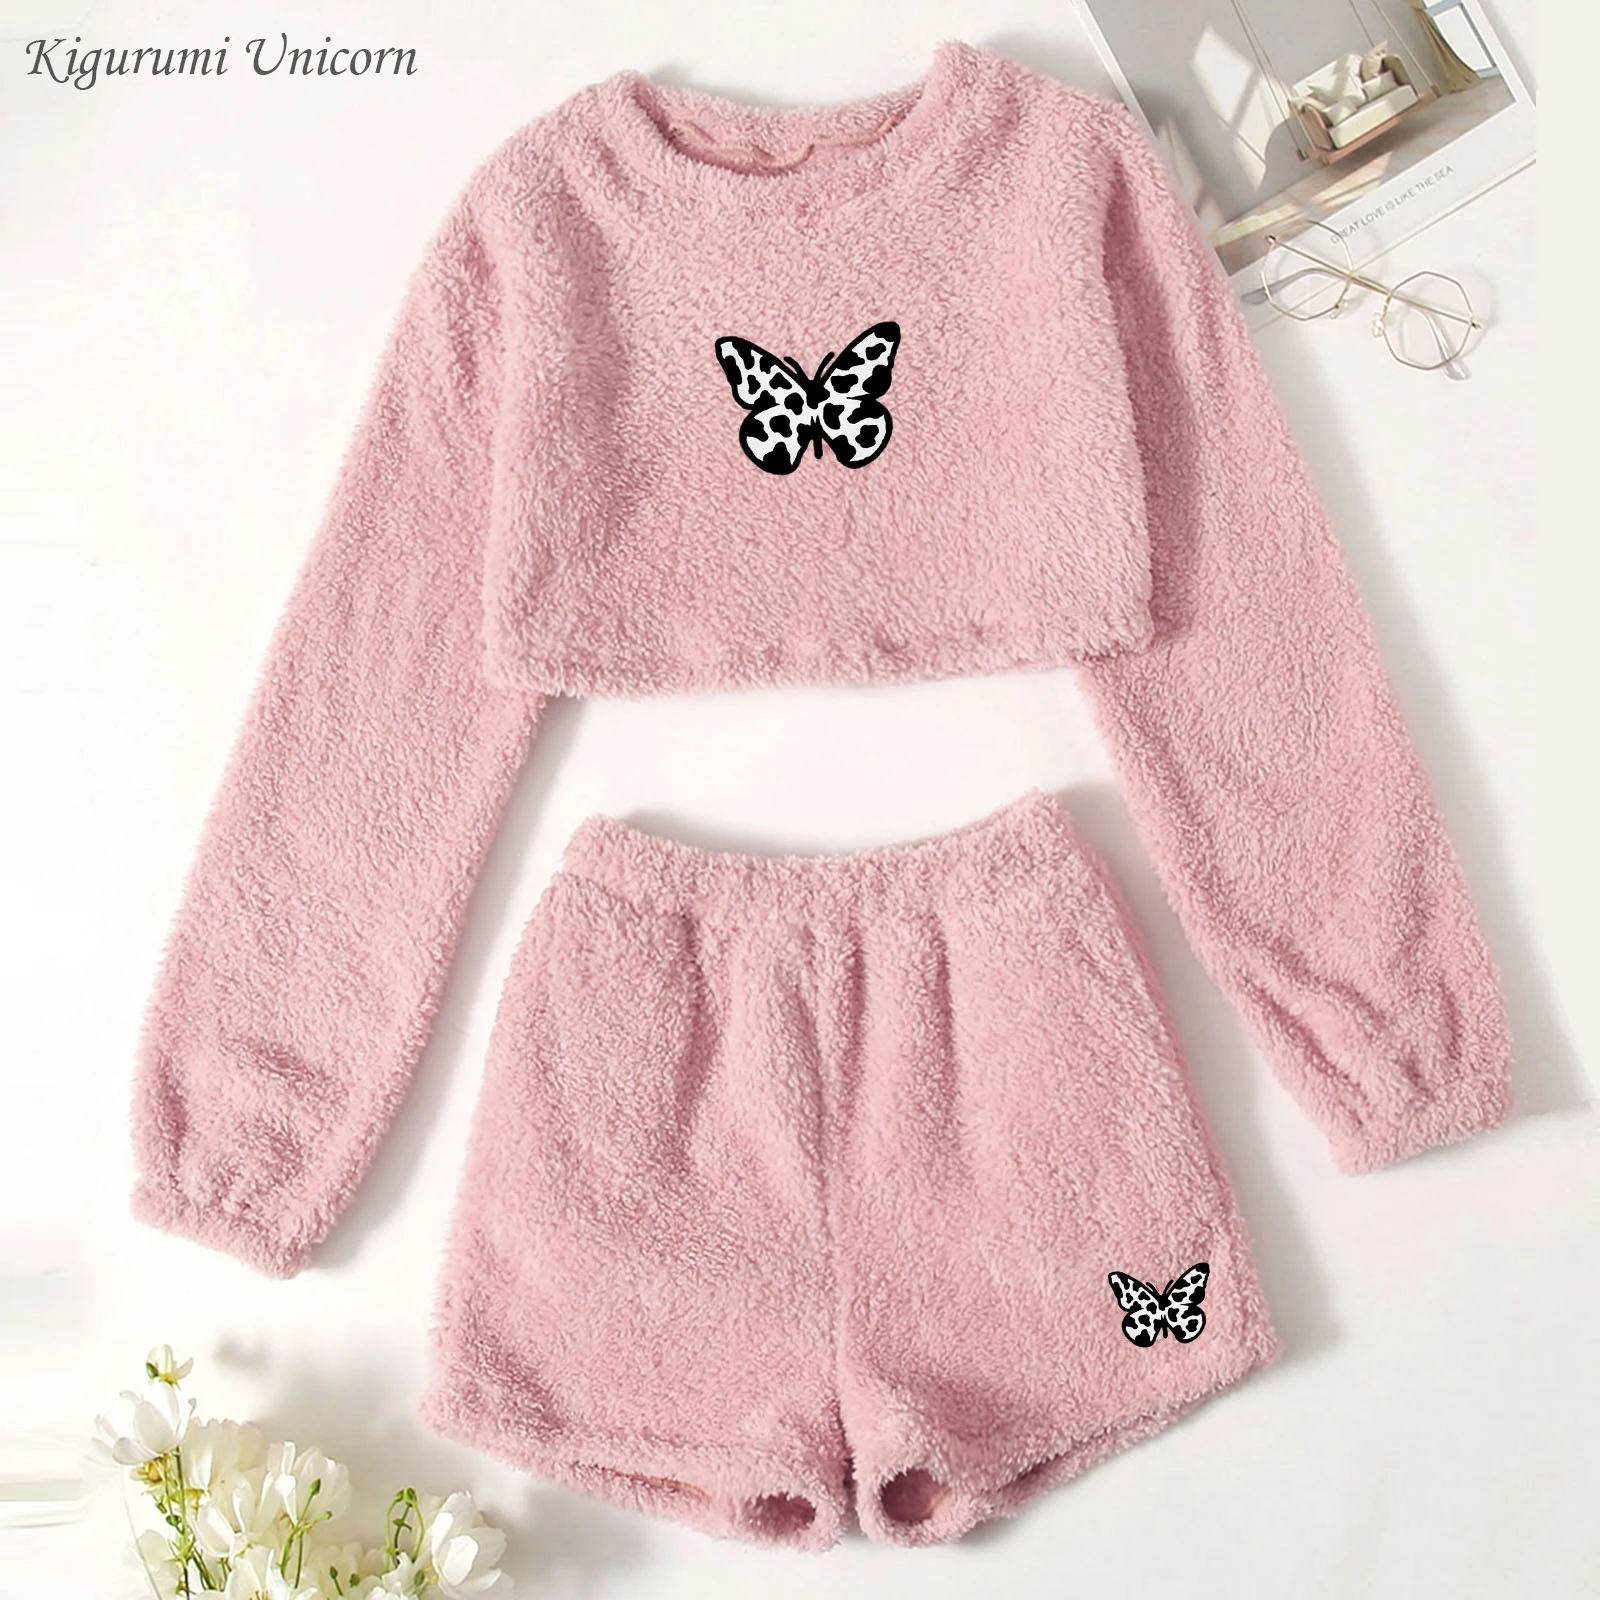 Пижамный комплект с принтом бабочки Осенний Теплый Мягкий Розовый пуловер